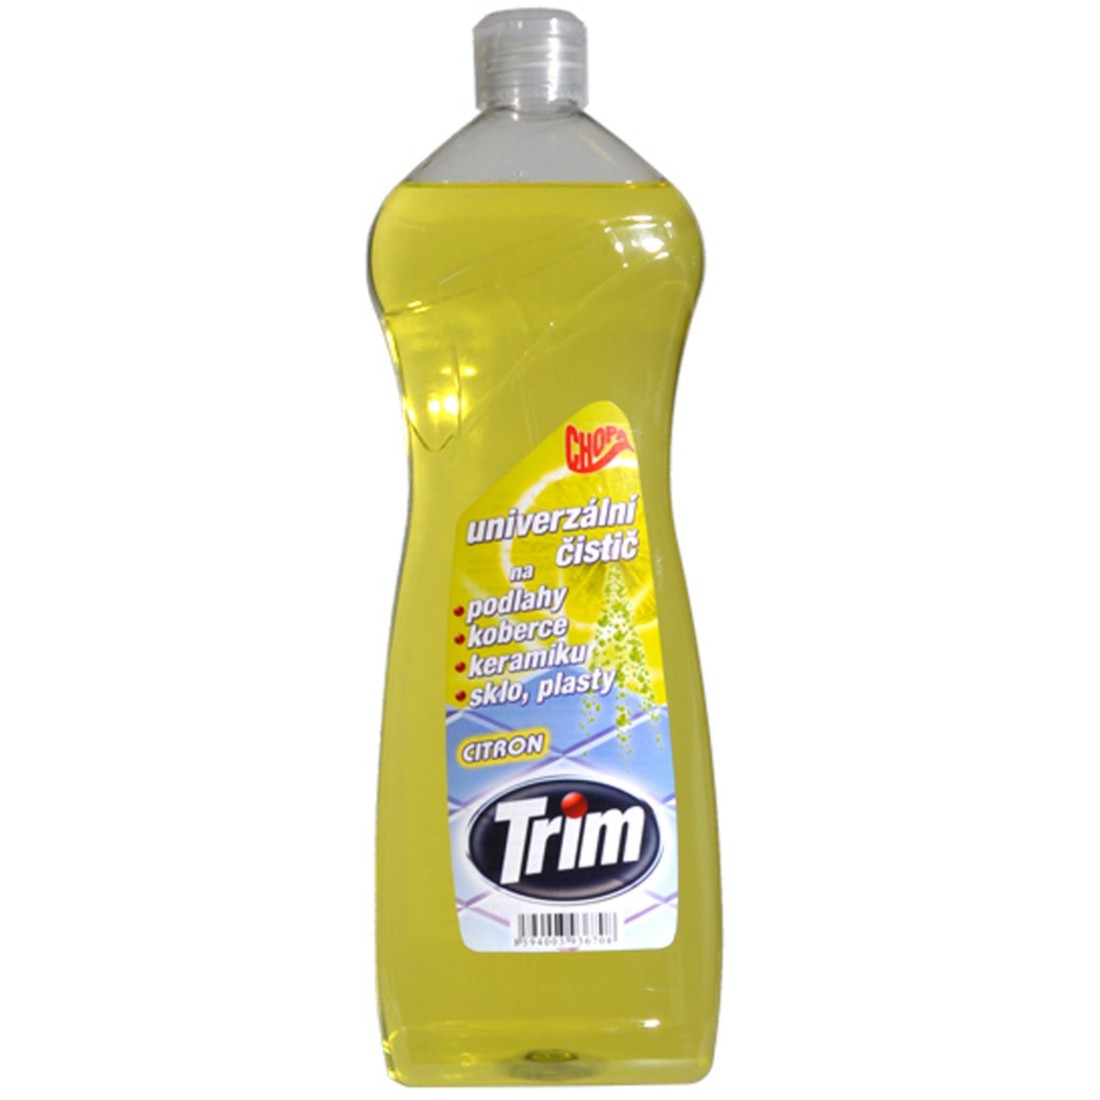 Trim Čistící prostředek - univerzální TRIM, citron, 1 l